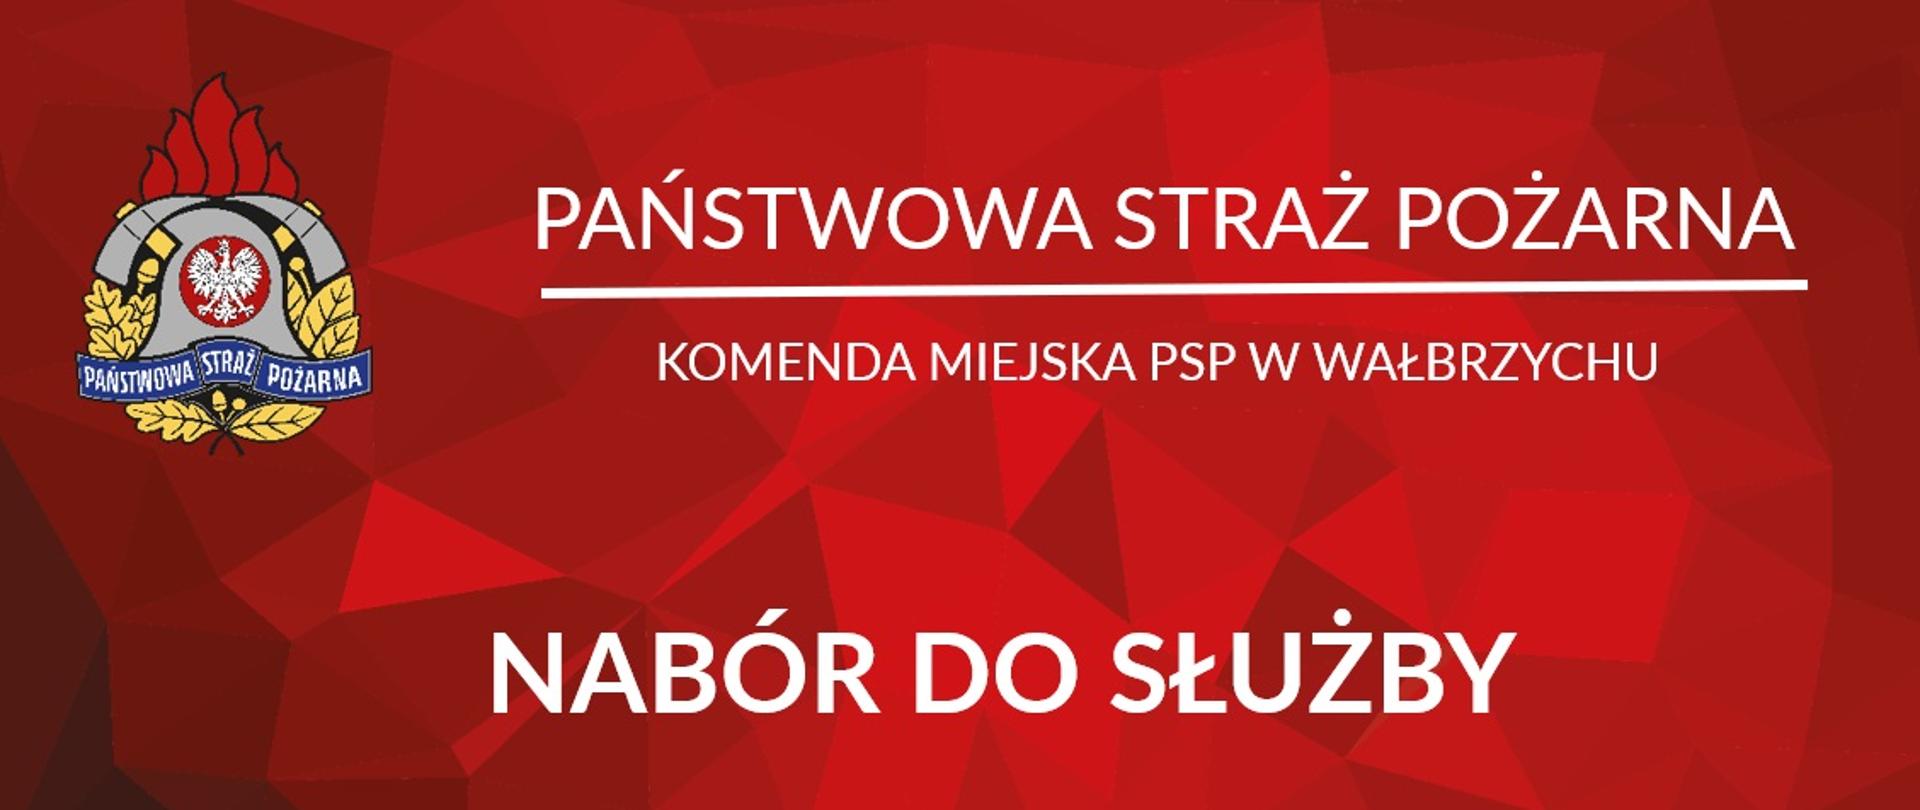 Na czerwonym tle napis Państwowa Straż Pożarna, Komenda Miejska PSP w Wałbrzychu, Nabór do służby. Po lewej stronie kolorowe logo PSP